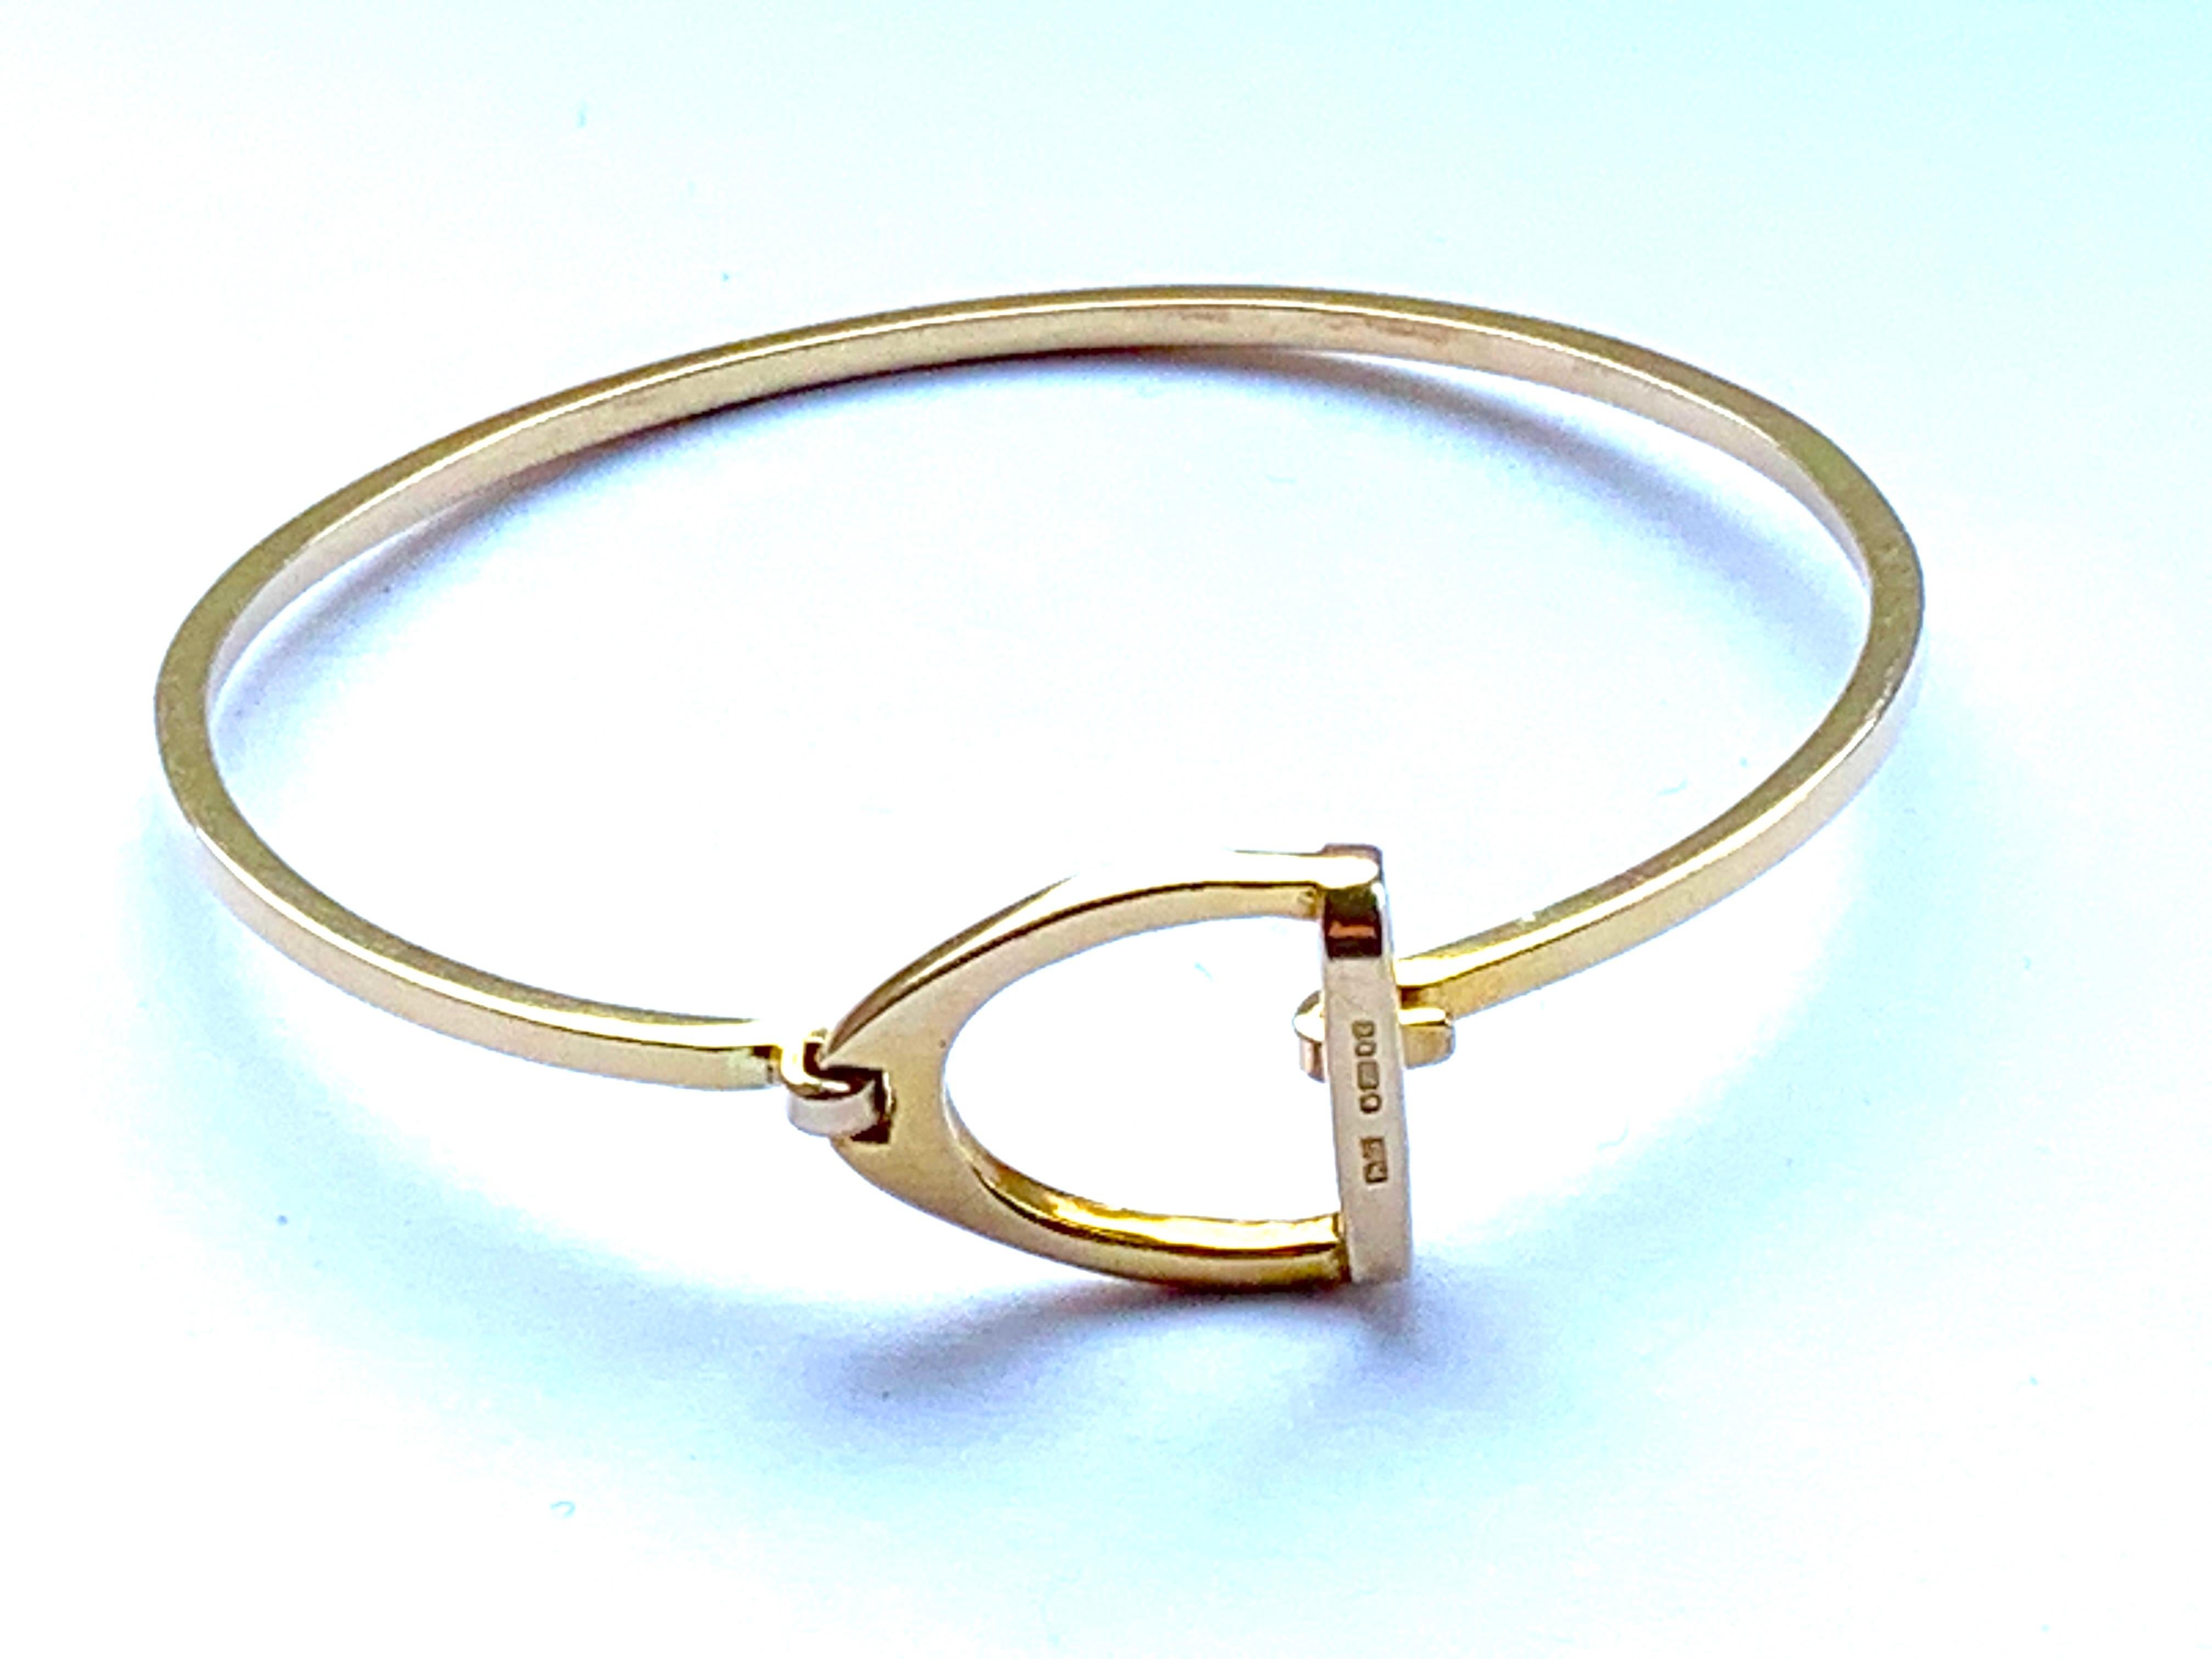 
Bracelet en or 9ct 375
Design/One
Fermeture étanche et sûre - avec une chaîne de sécurité solide
Entièrement poinçonné sur l'étrier
Circonférence 18,85 cm
Diamètre  9.42 cm
Ajustement maximum du poignet : 7.2 pouces
Epaisseur du bracelet  2mm